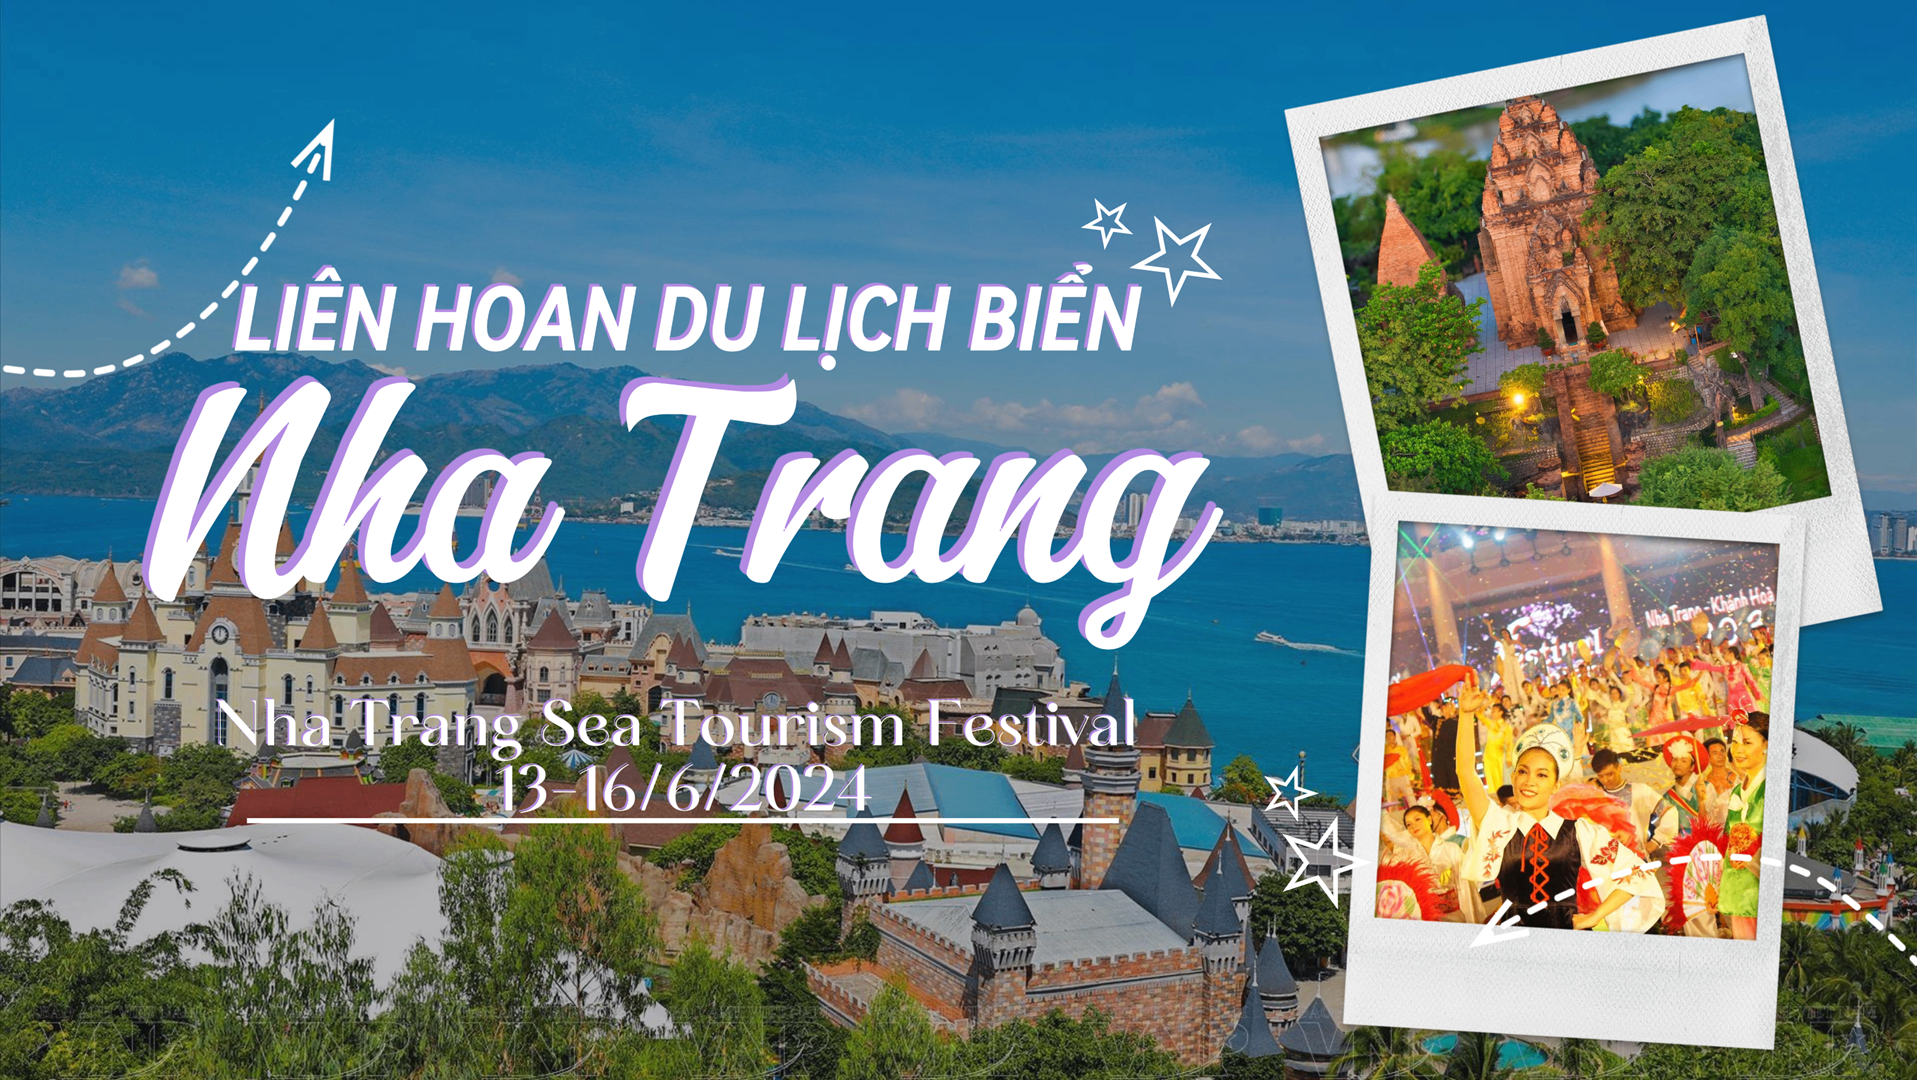 Liên hoan du lịch biển Nha Trang